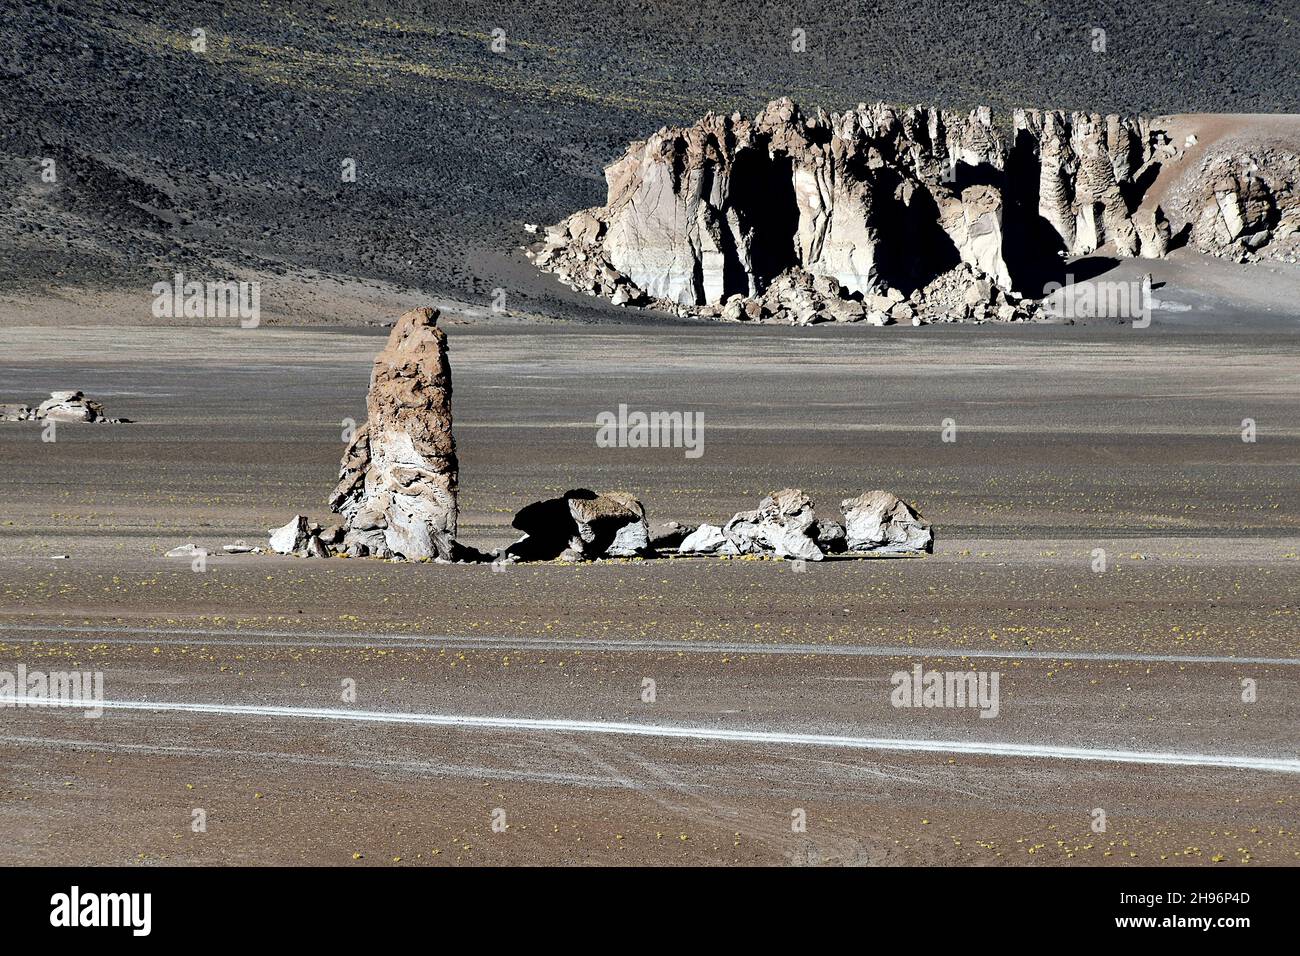 Le monolithe géologique (Monjes de la Pakana) et d'énormes rochers bruts dans le désert d'Atacama, au Chili Banque D'Images